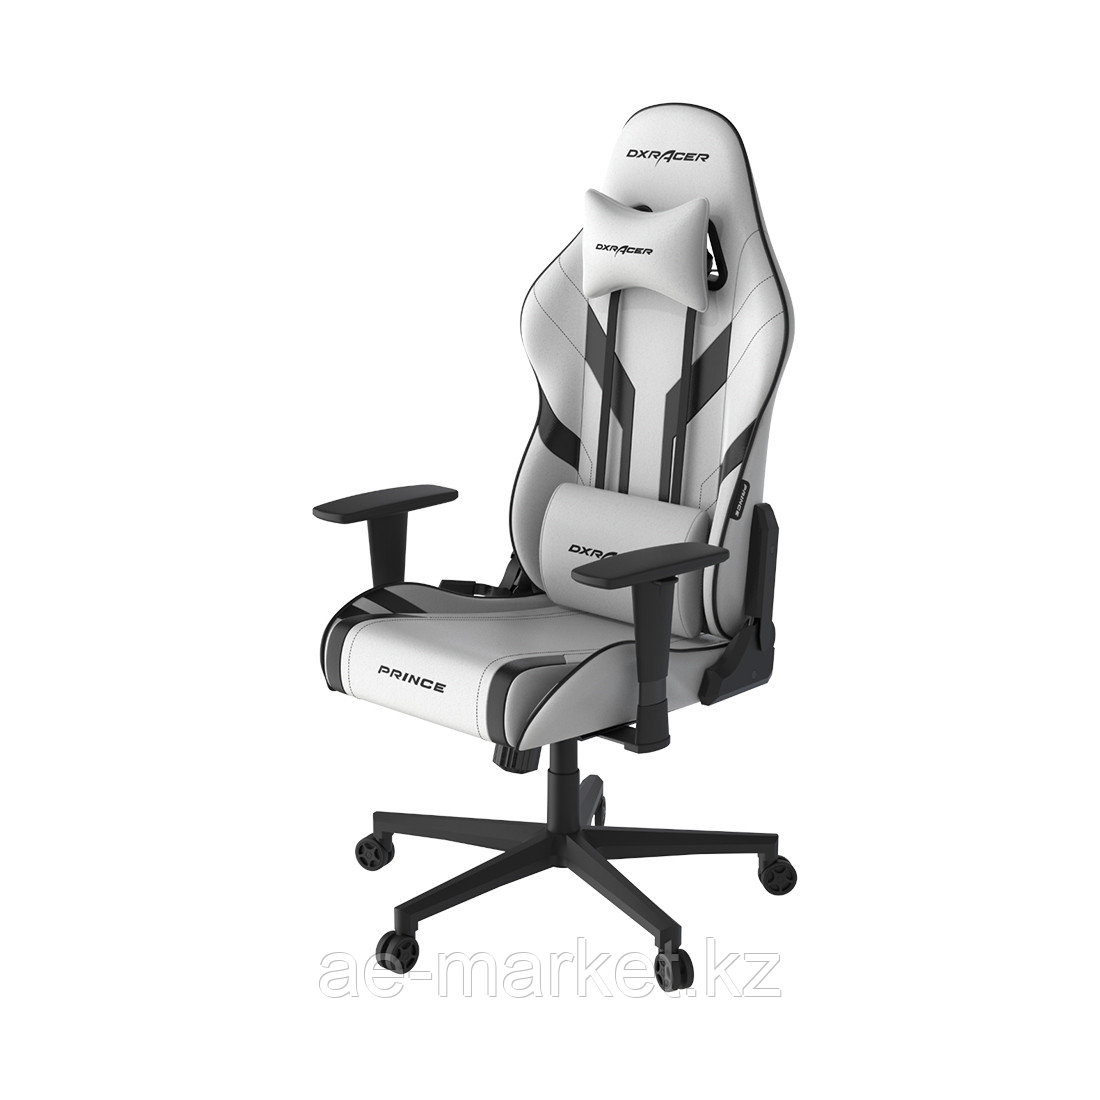 Игровое компьютерное кресло DX Racer GC/P88/WN, фото 1